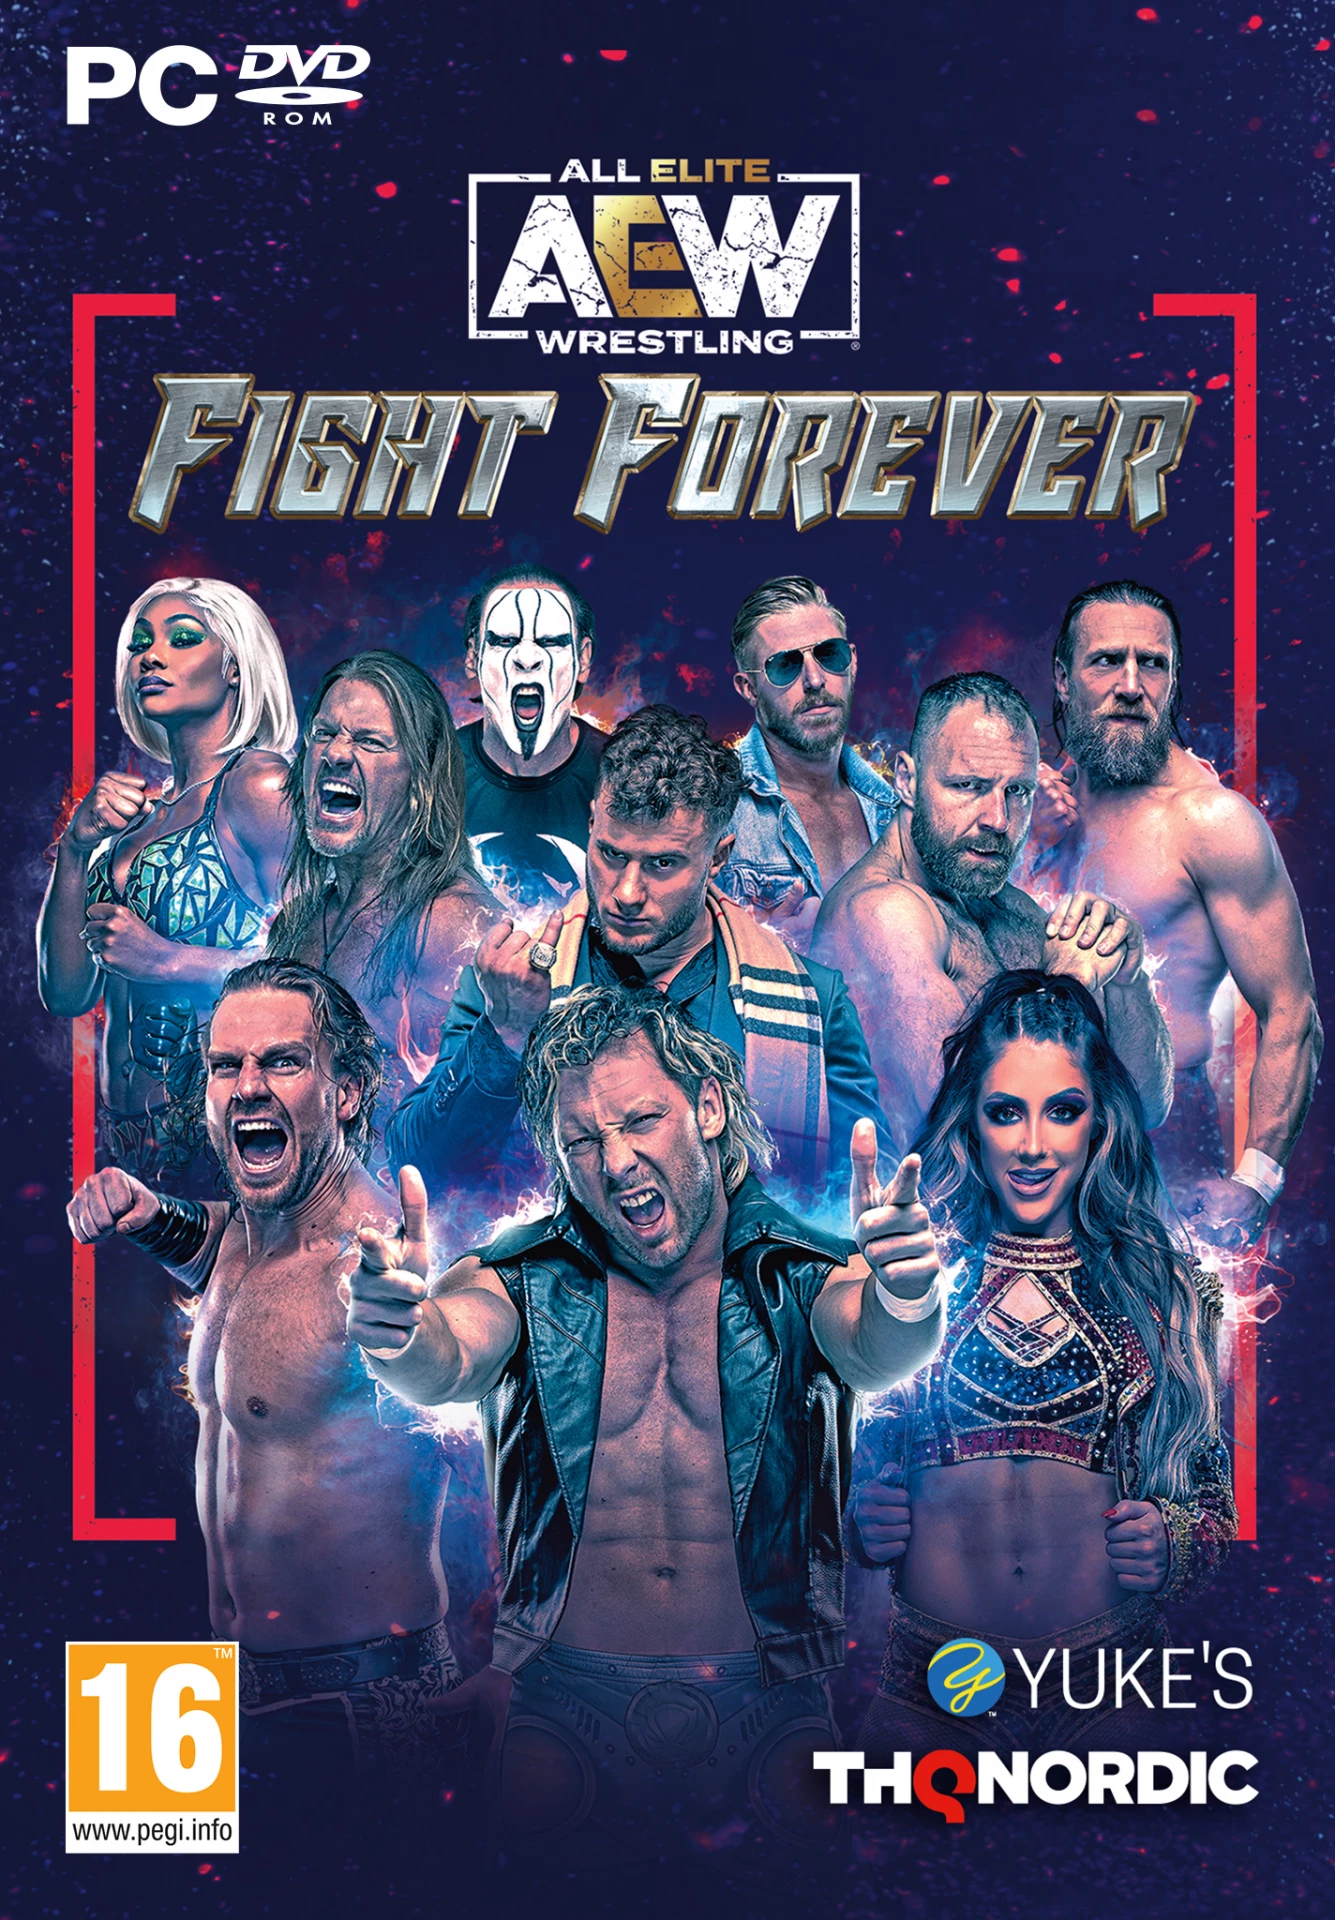 AEW All Elite Wrestling: Fight Forever (PC), Yuke's